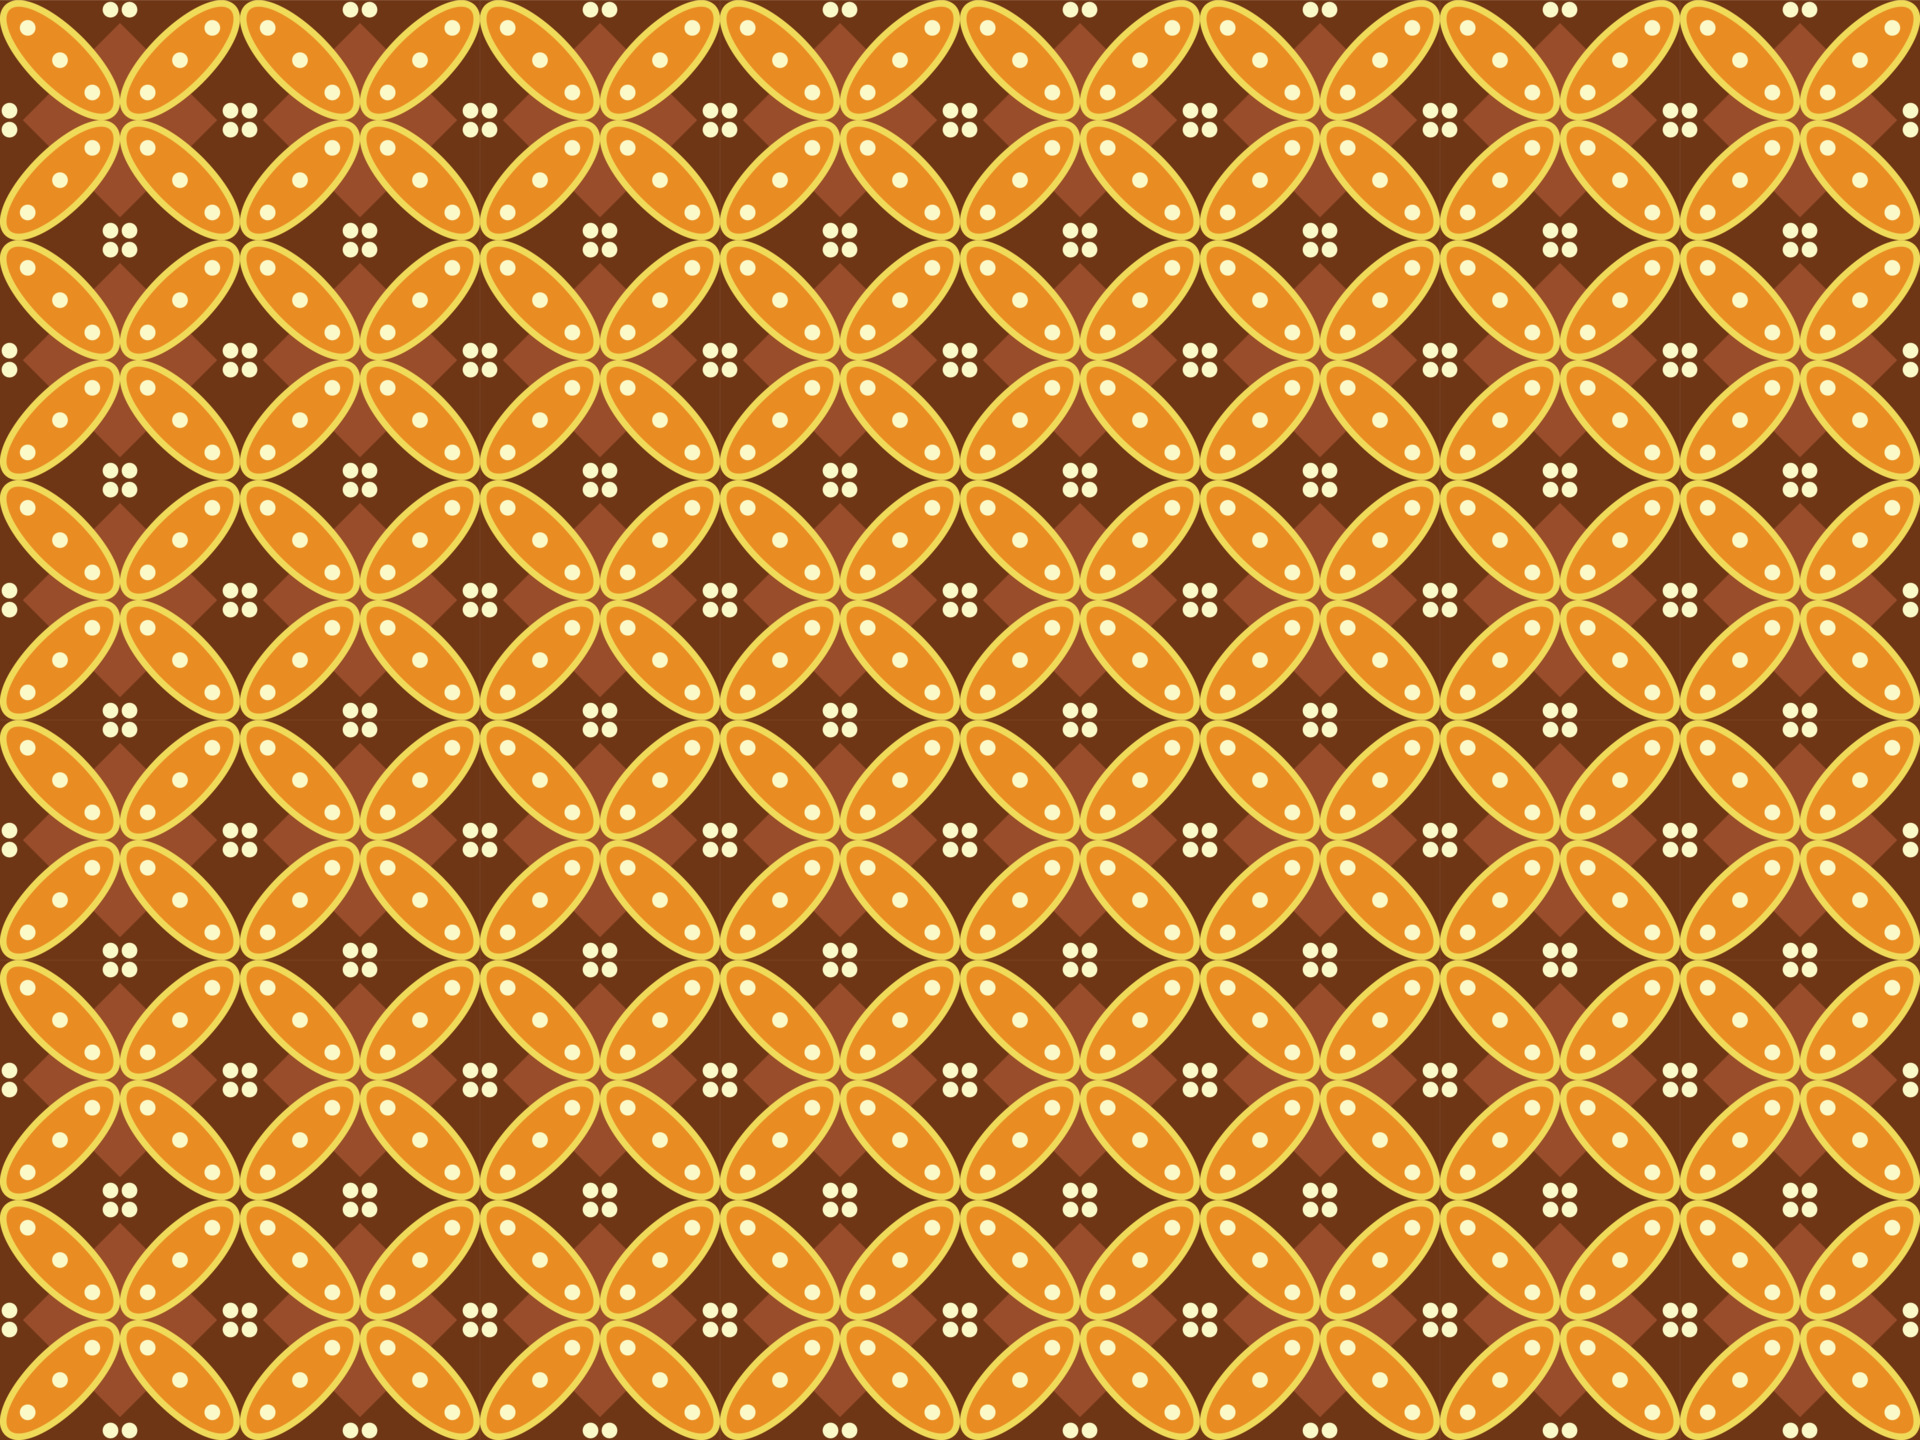 Hoa văn Batik được tạo nên từ những nét vẽ tinh tế và màu sắc sinh động, tạo nên một sự kết hợp hài hòa và tuyệt vời. Hãy thưởng thức hình ảnh liên quan đến hoa văn Batik để trải nghiệm một nét đẹp nghệ thuật độc đáo.